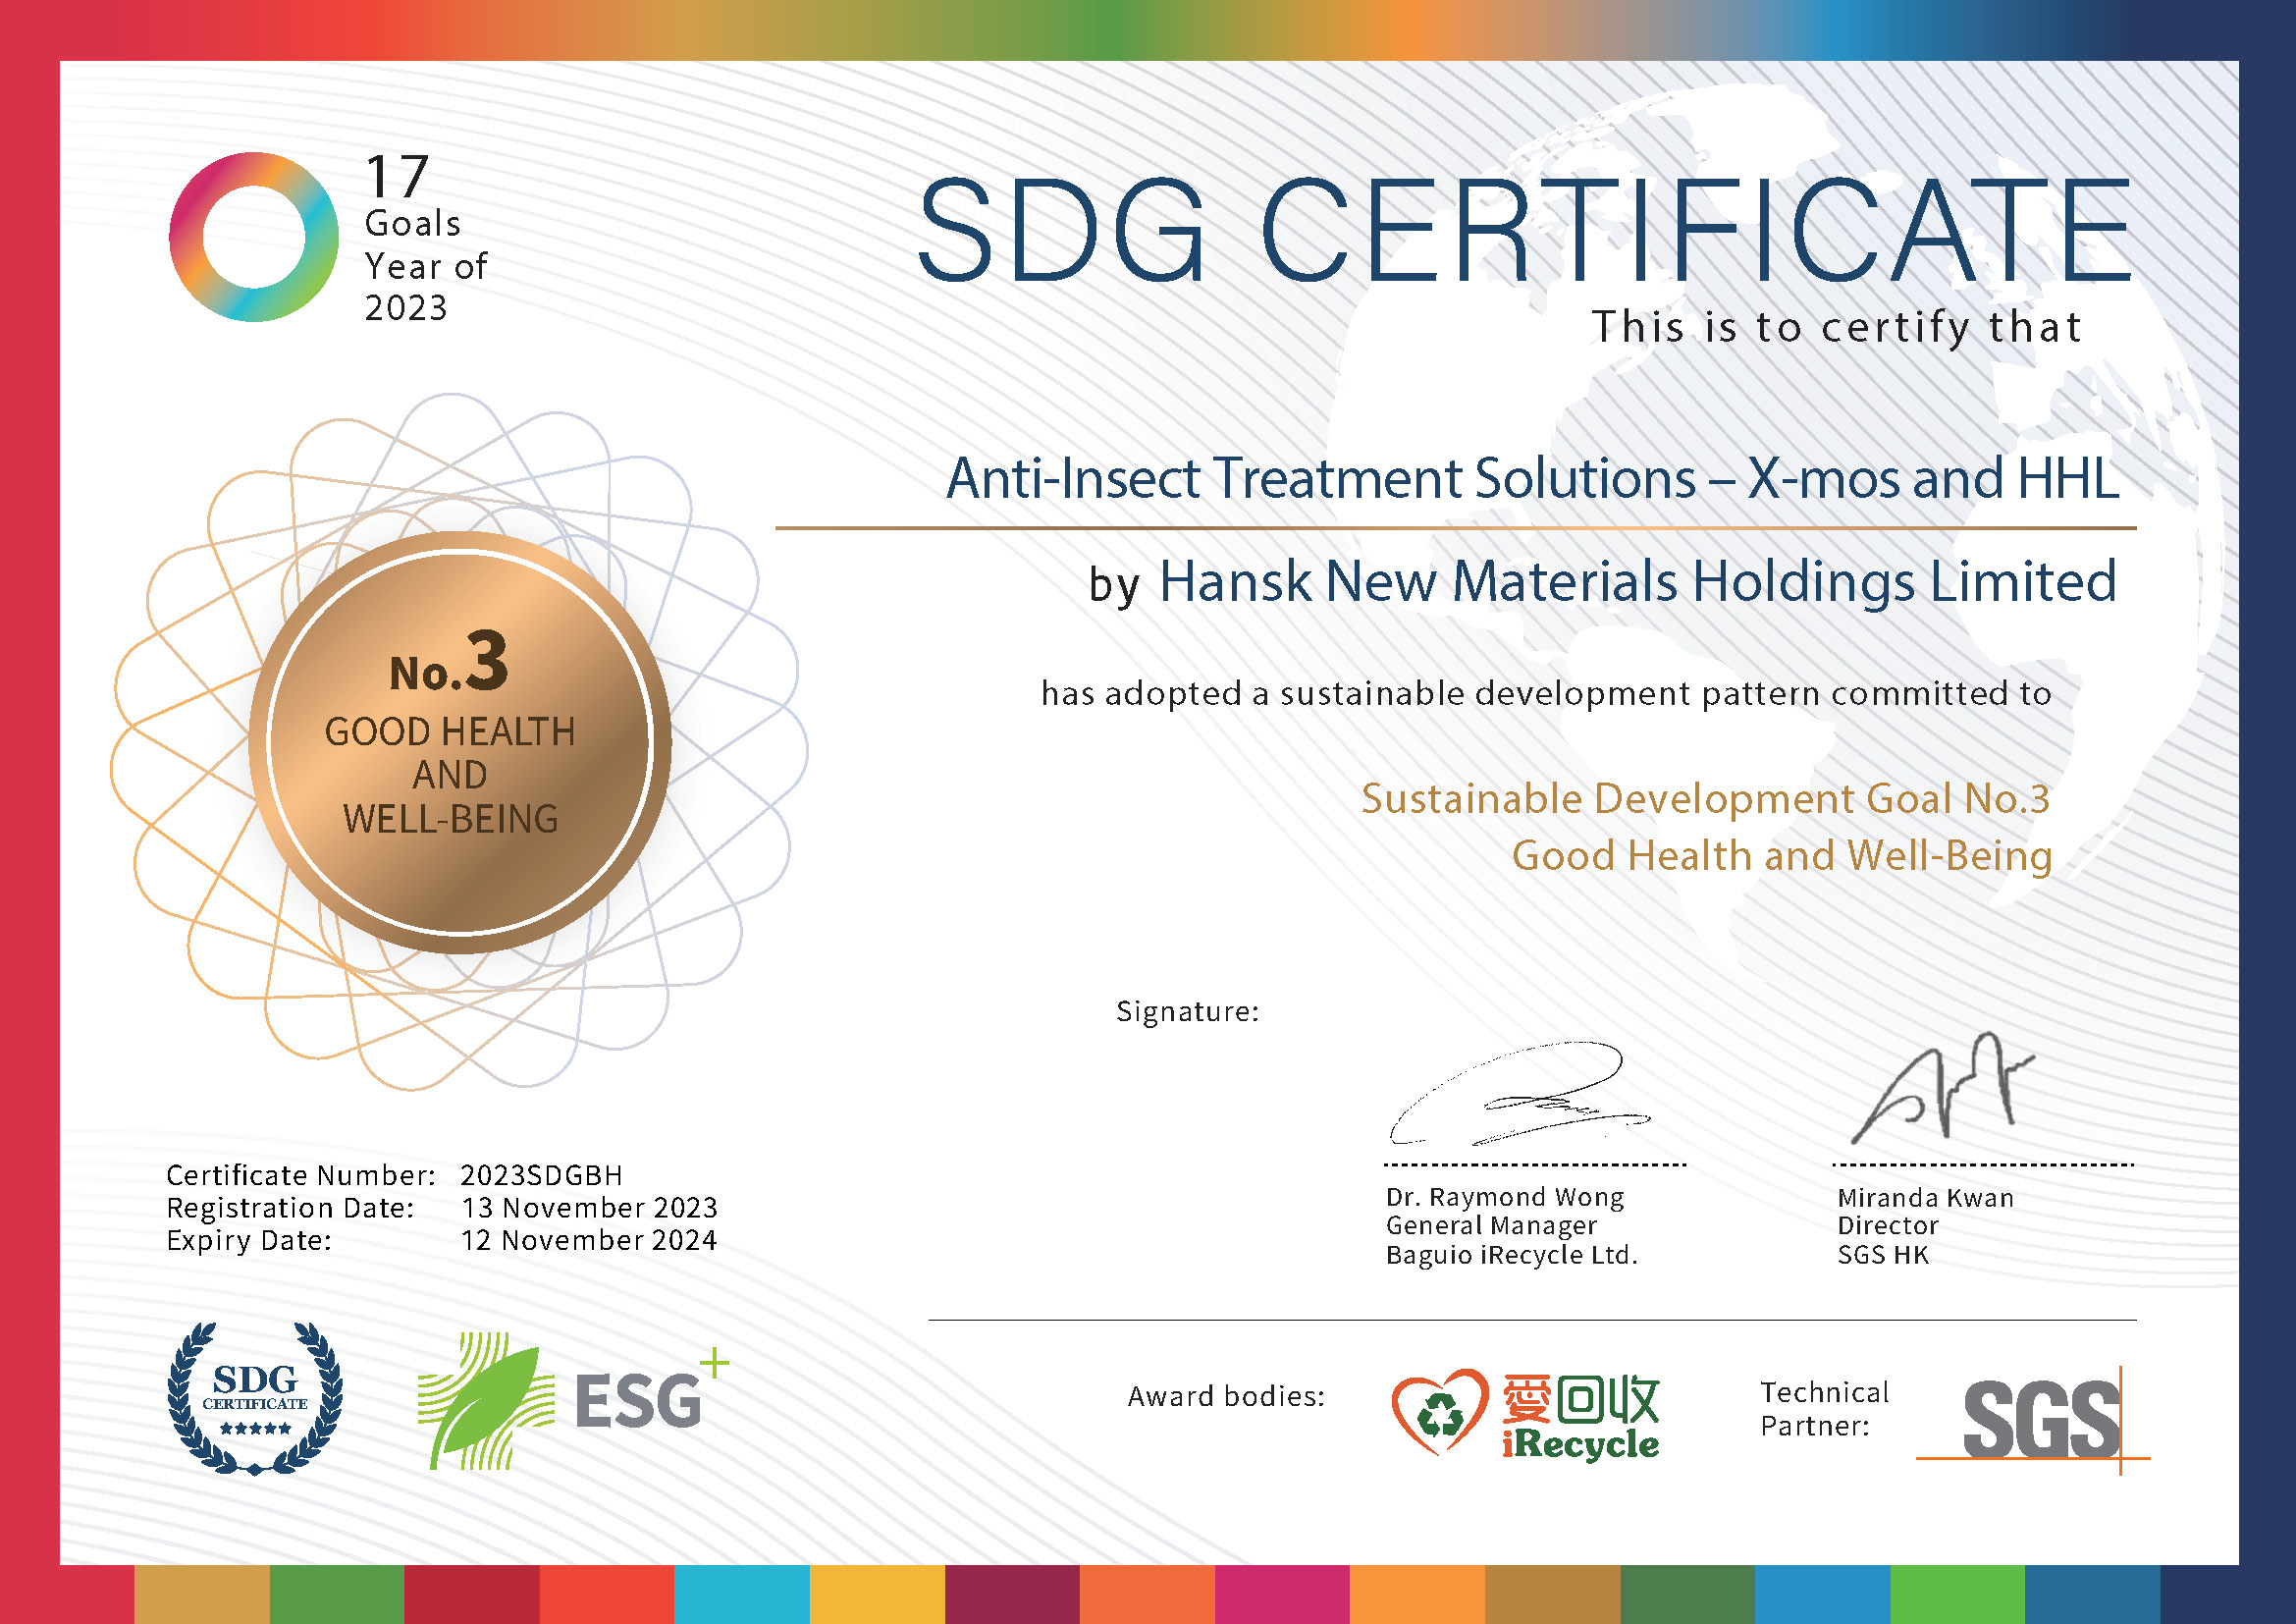 SDG Cert_2023SDGBH hansk-3.jpg